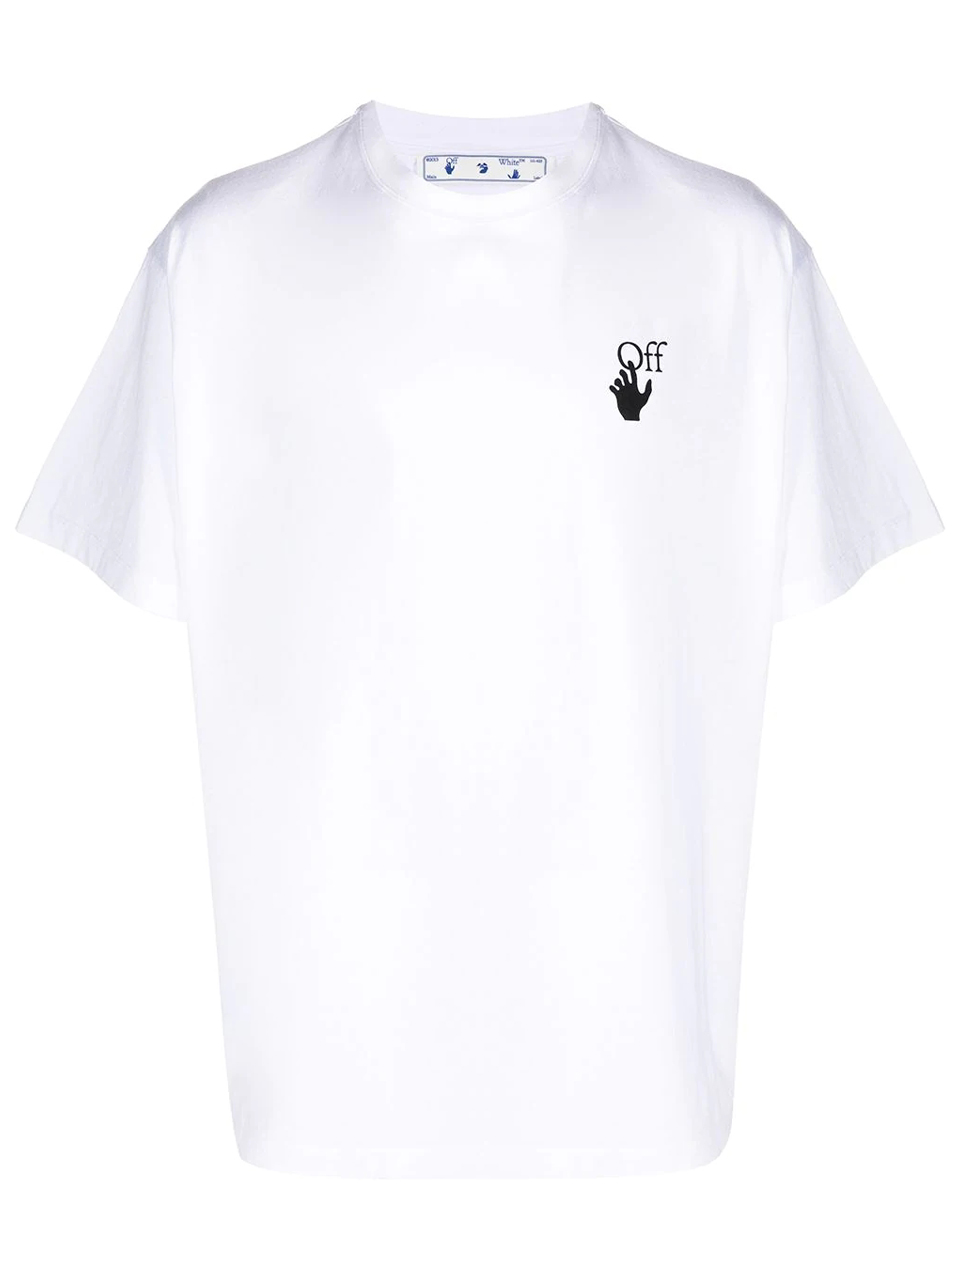 Imagem de: Camiseta Off-White Branca com Estampa Setas Riscadas